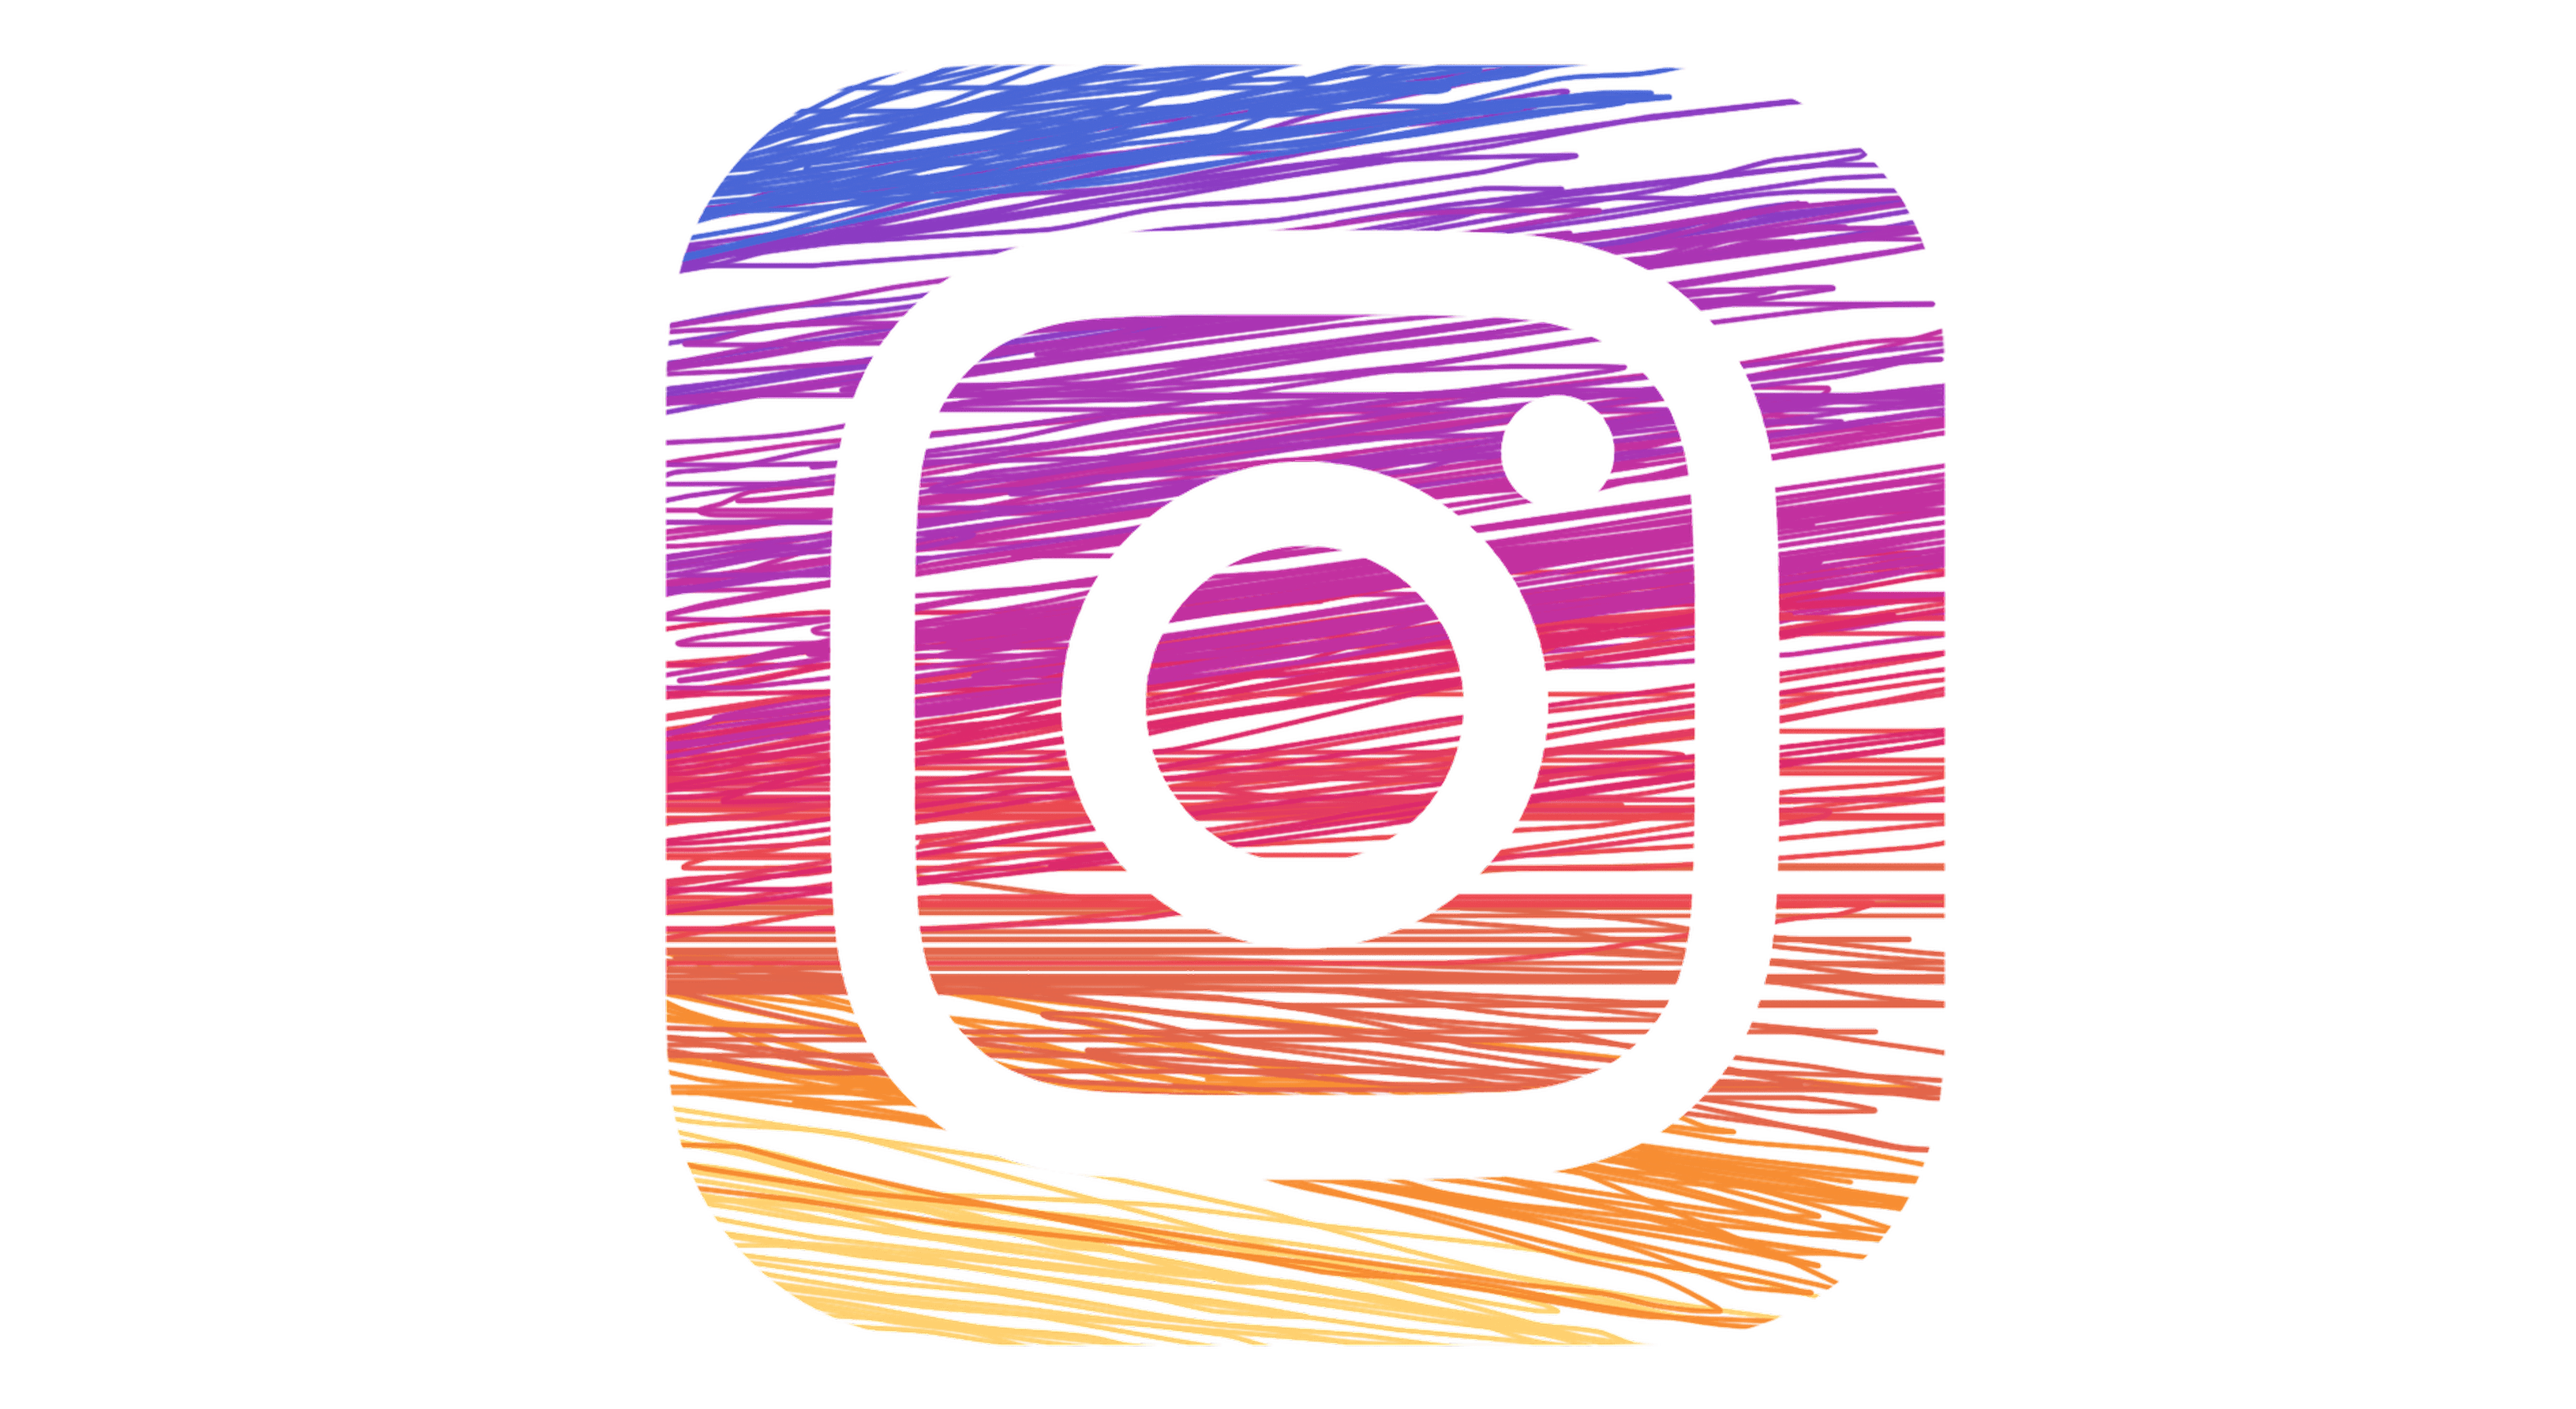 Instagtram Logo - New instagram banner free stock